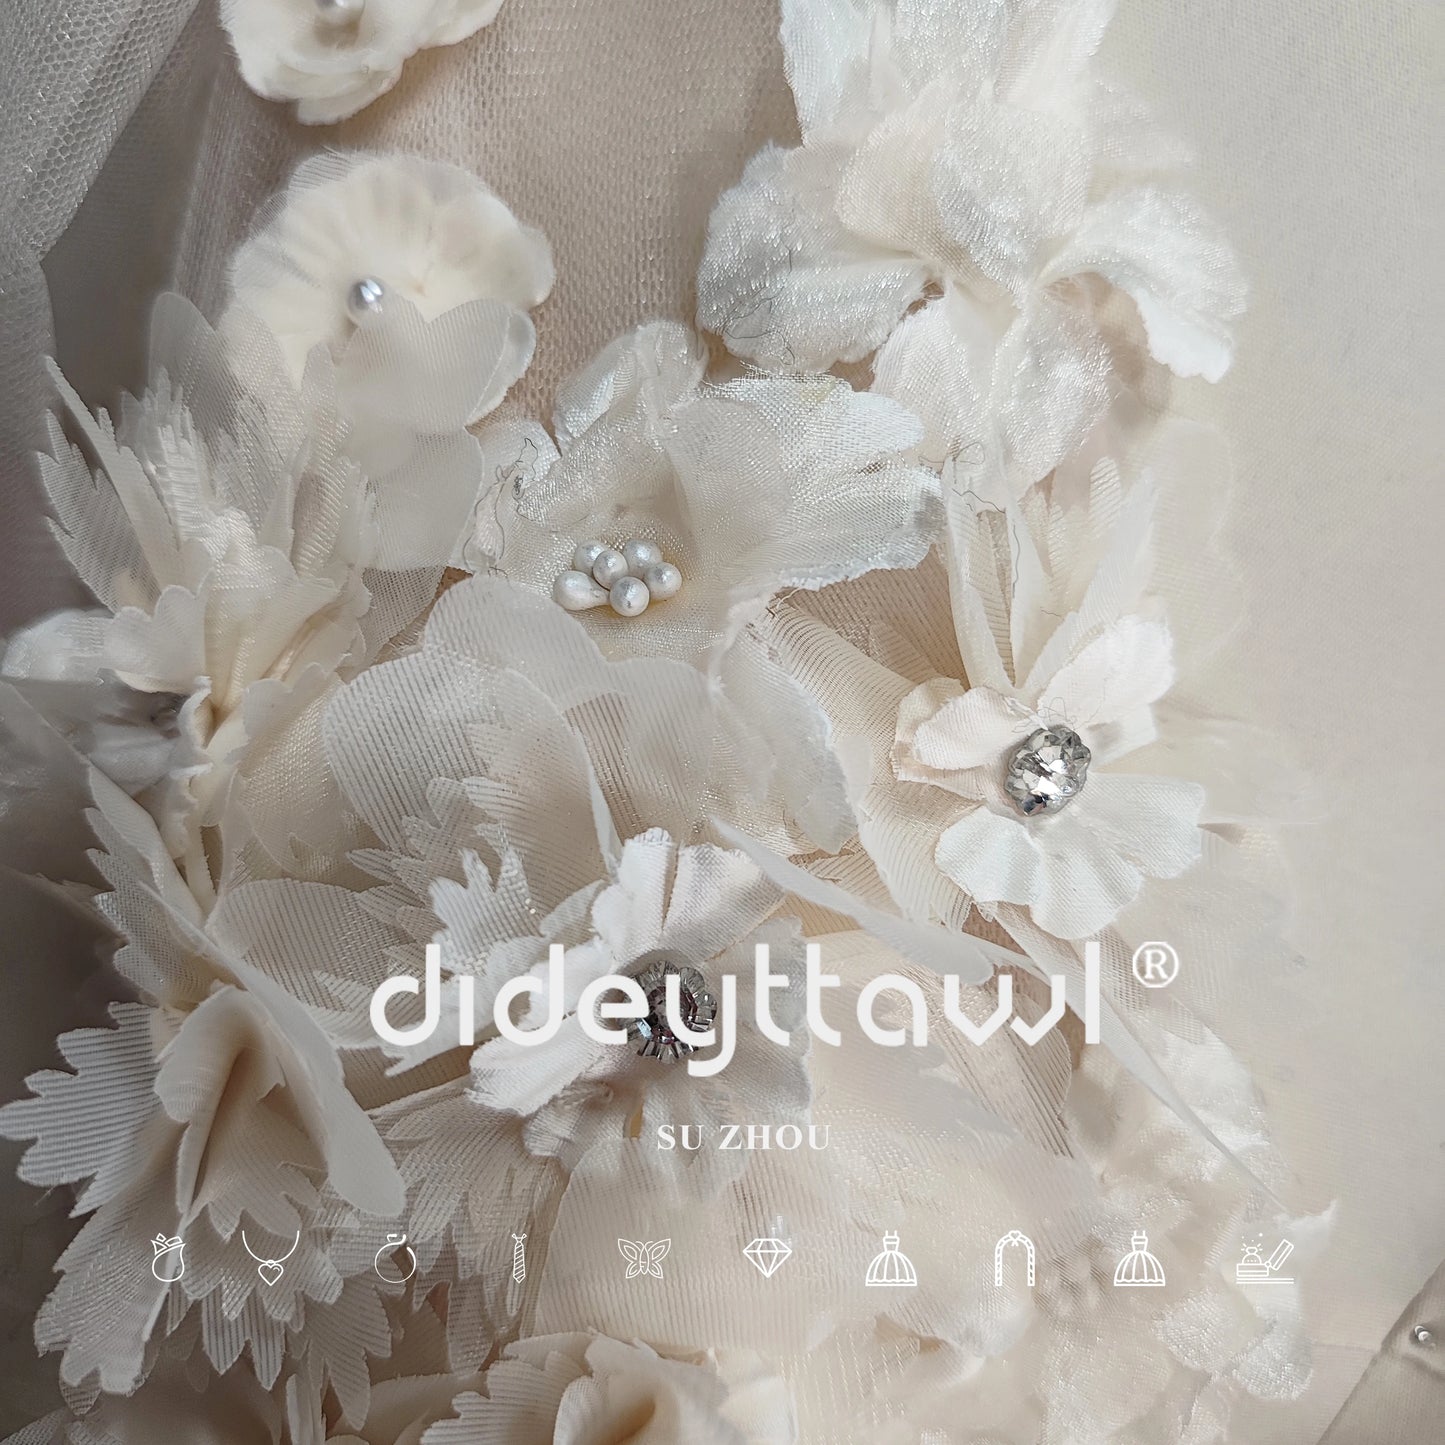 DIDEYTTAWL Photo réelle 3D fleurs manches bouffantes robe de mariée courte perles col en V profond dos nu Tulle Mini robe de mariée